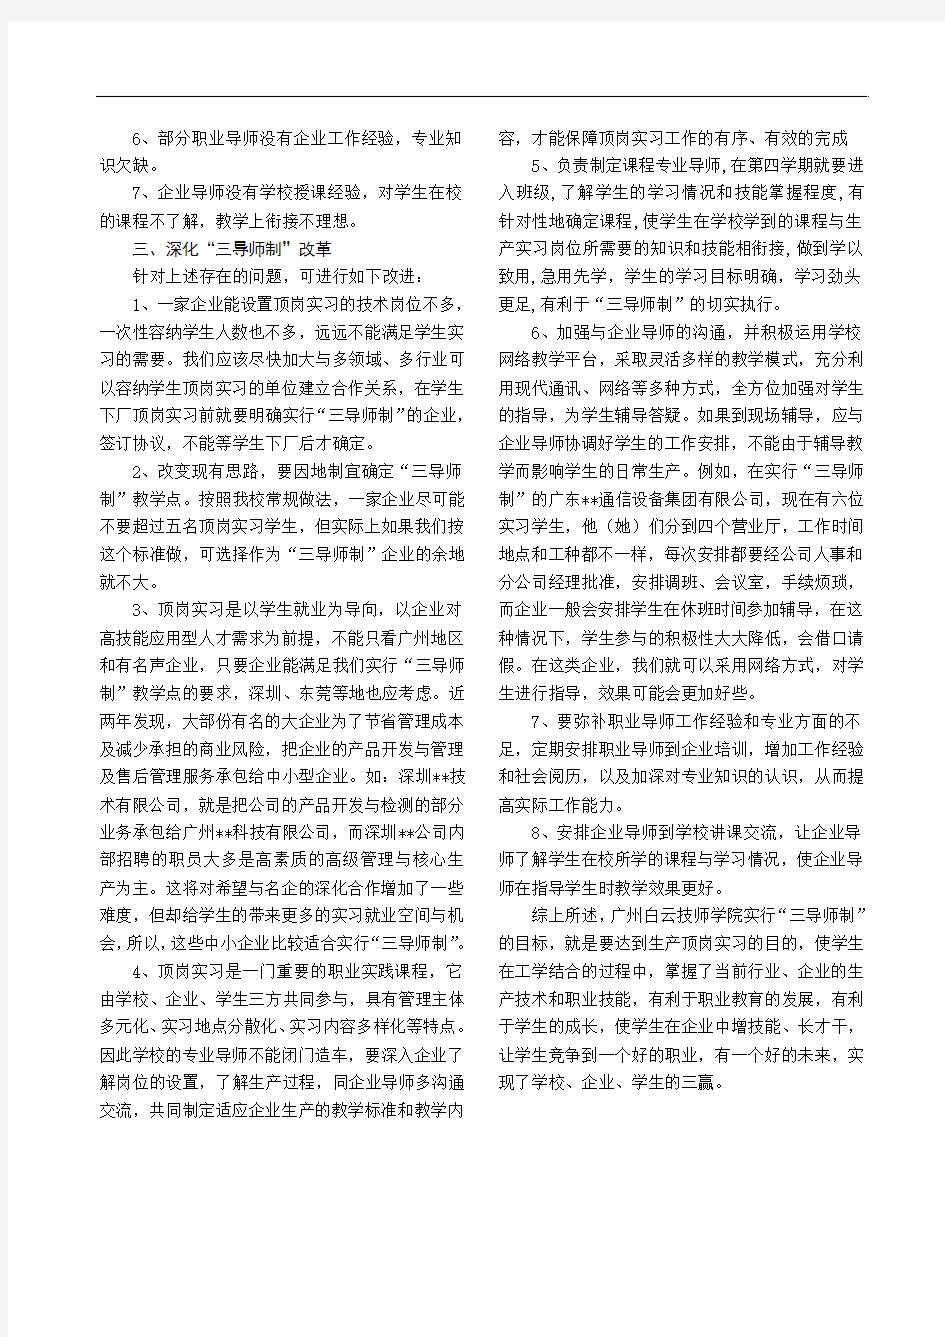 广州白云技师学院深化“三导师制”提高学生就业能力